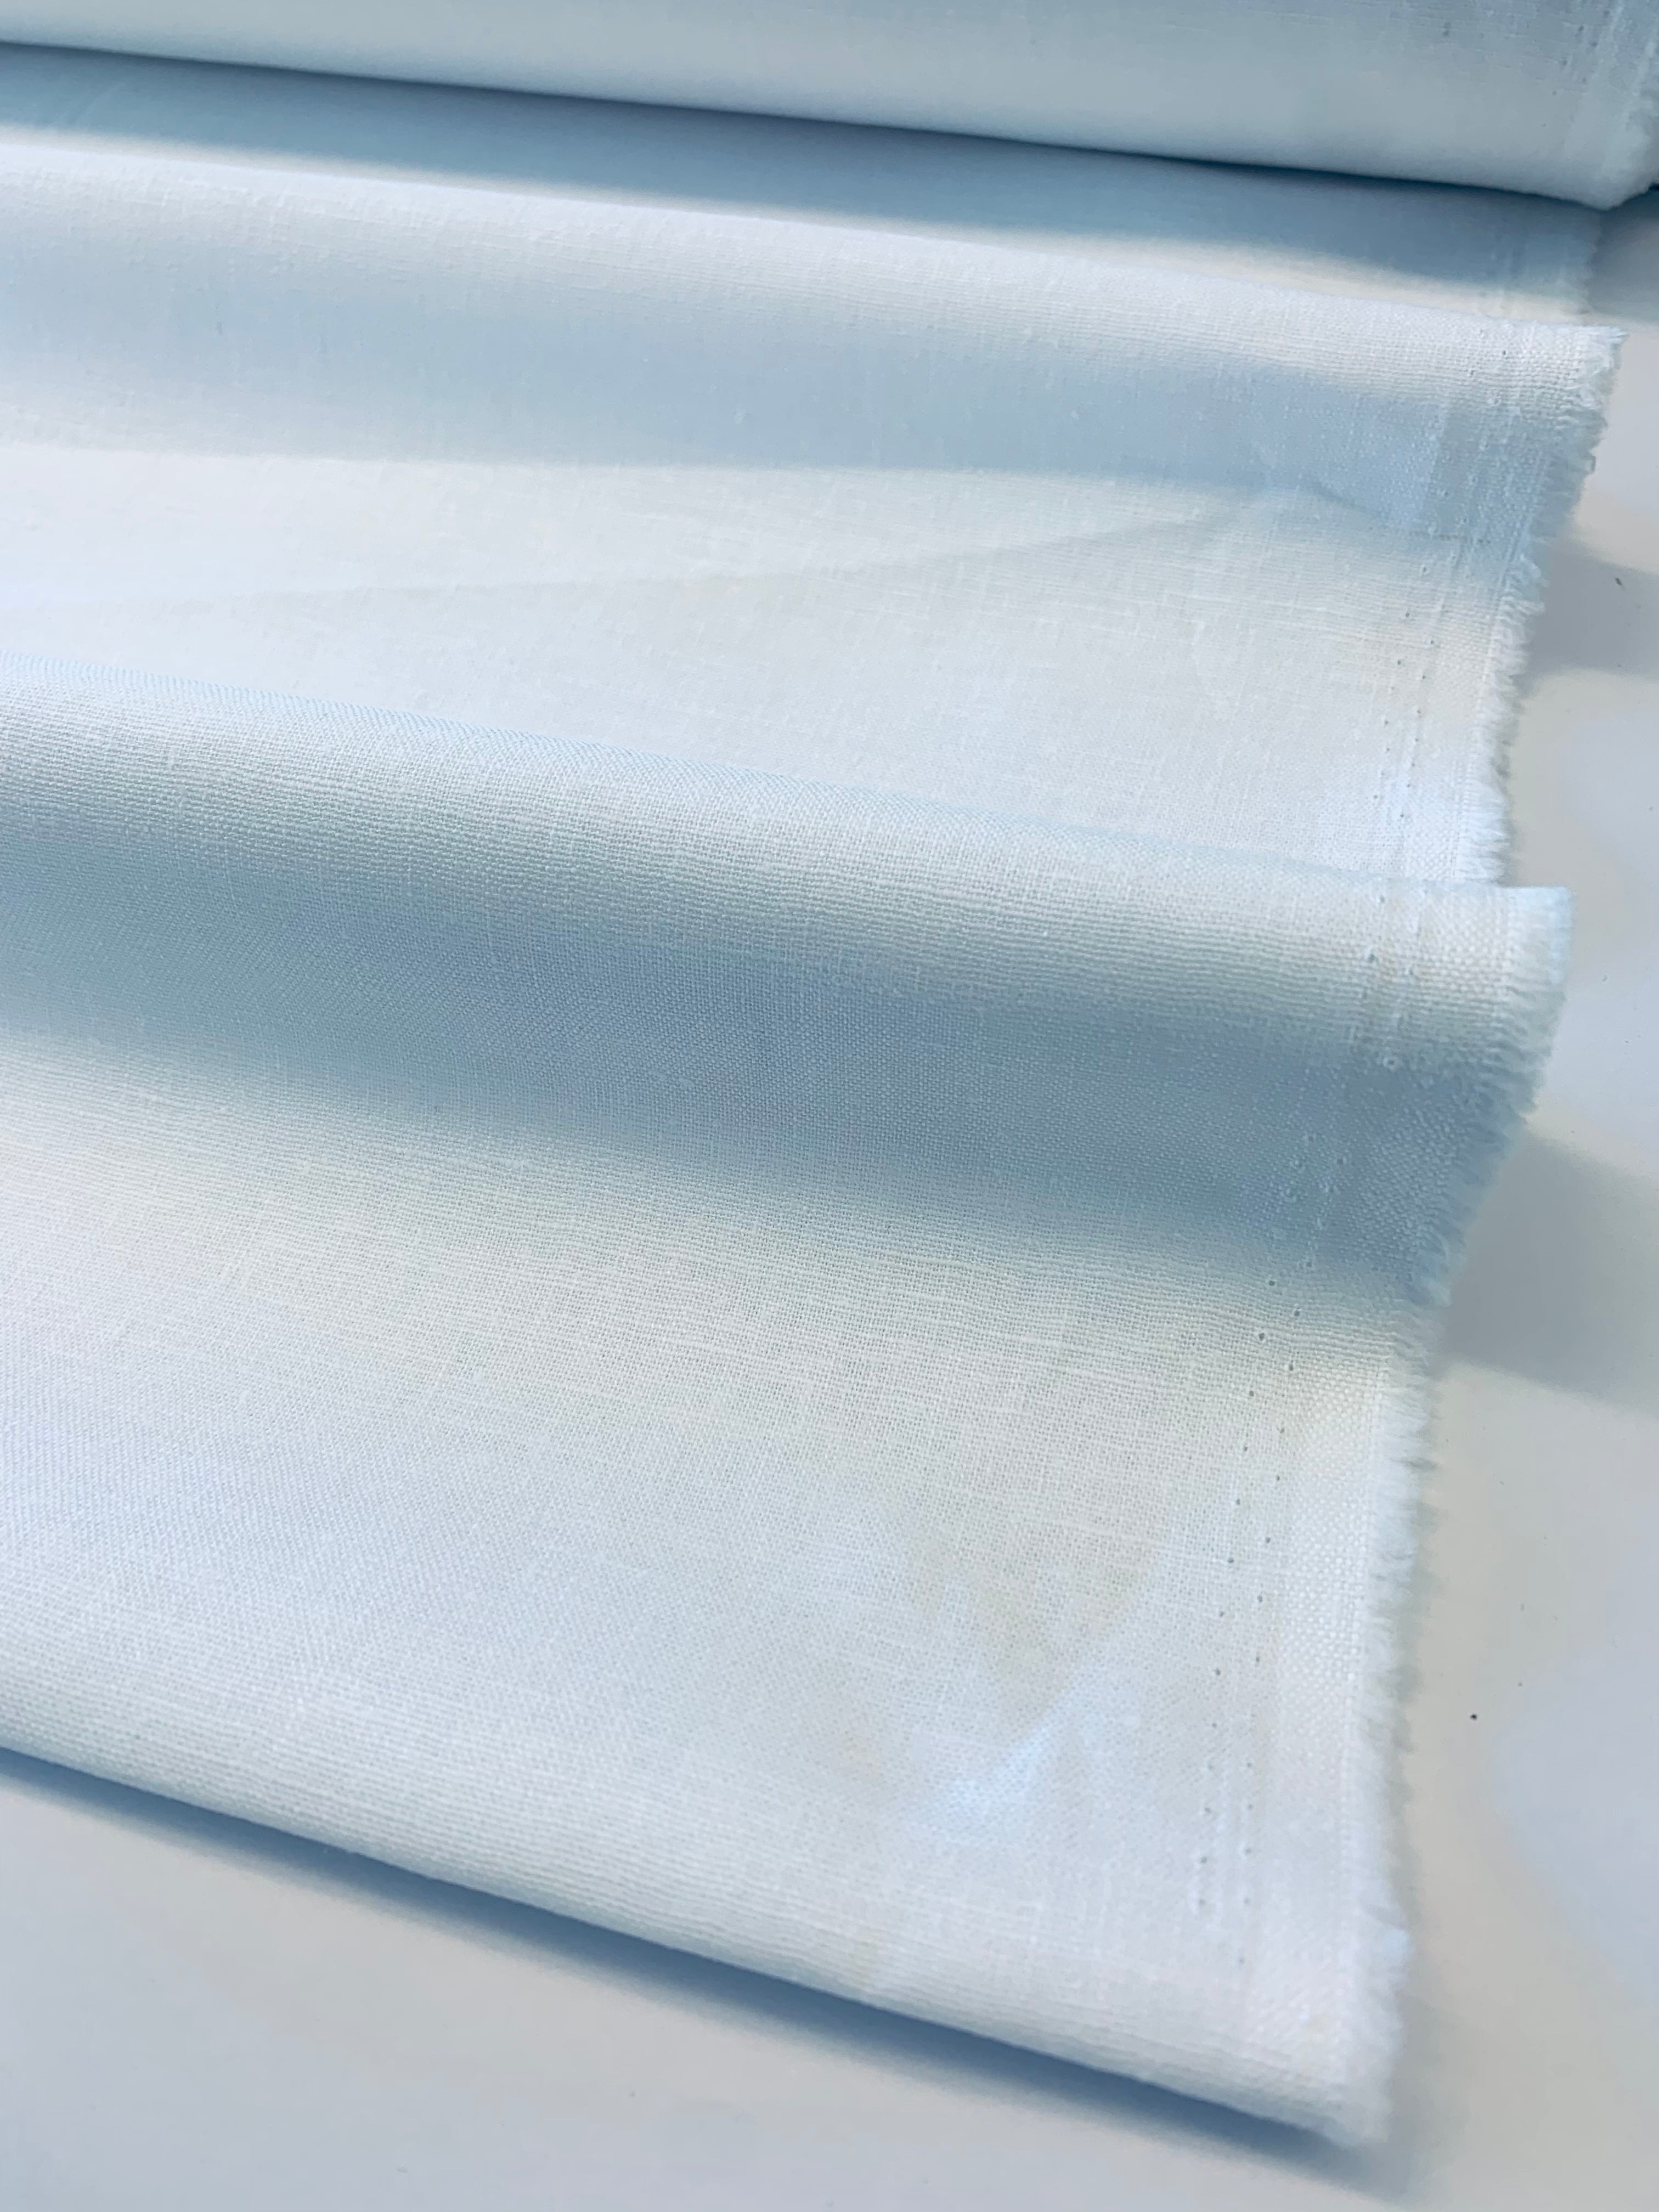 Tangier: Linen/cotton medium weight cloth